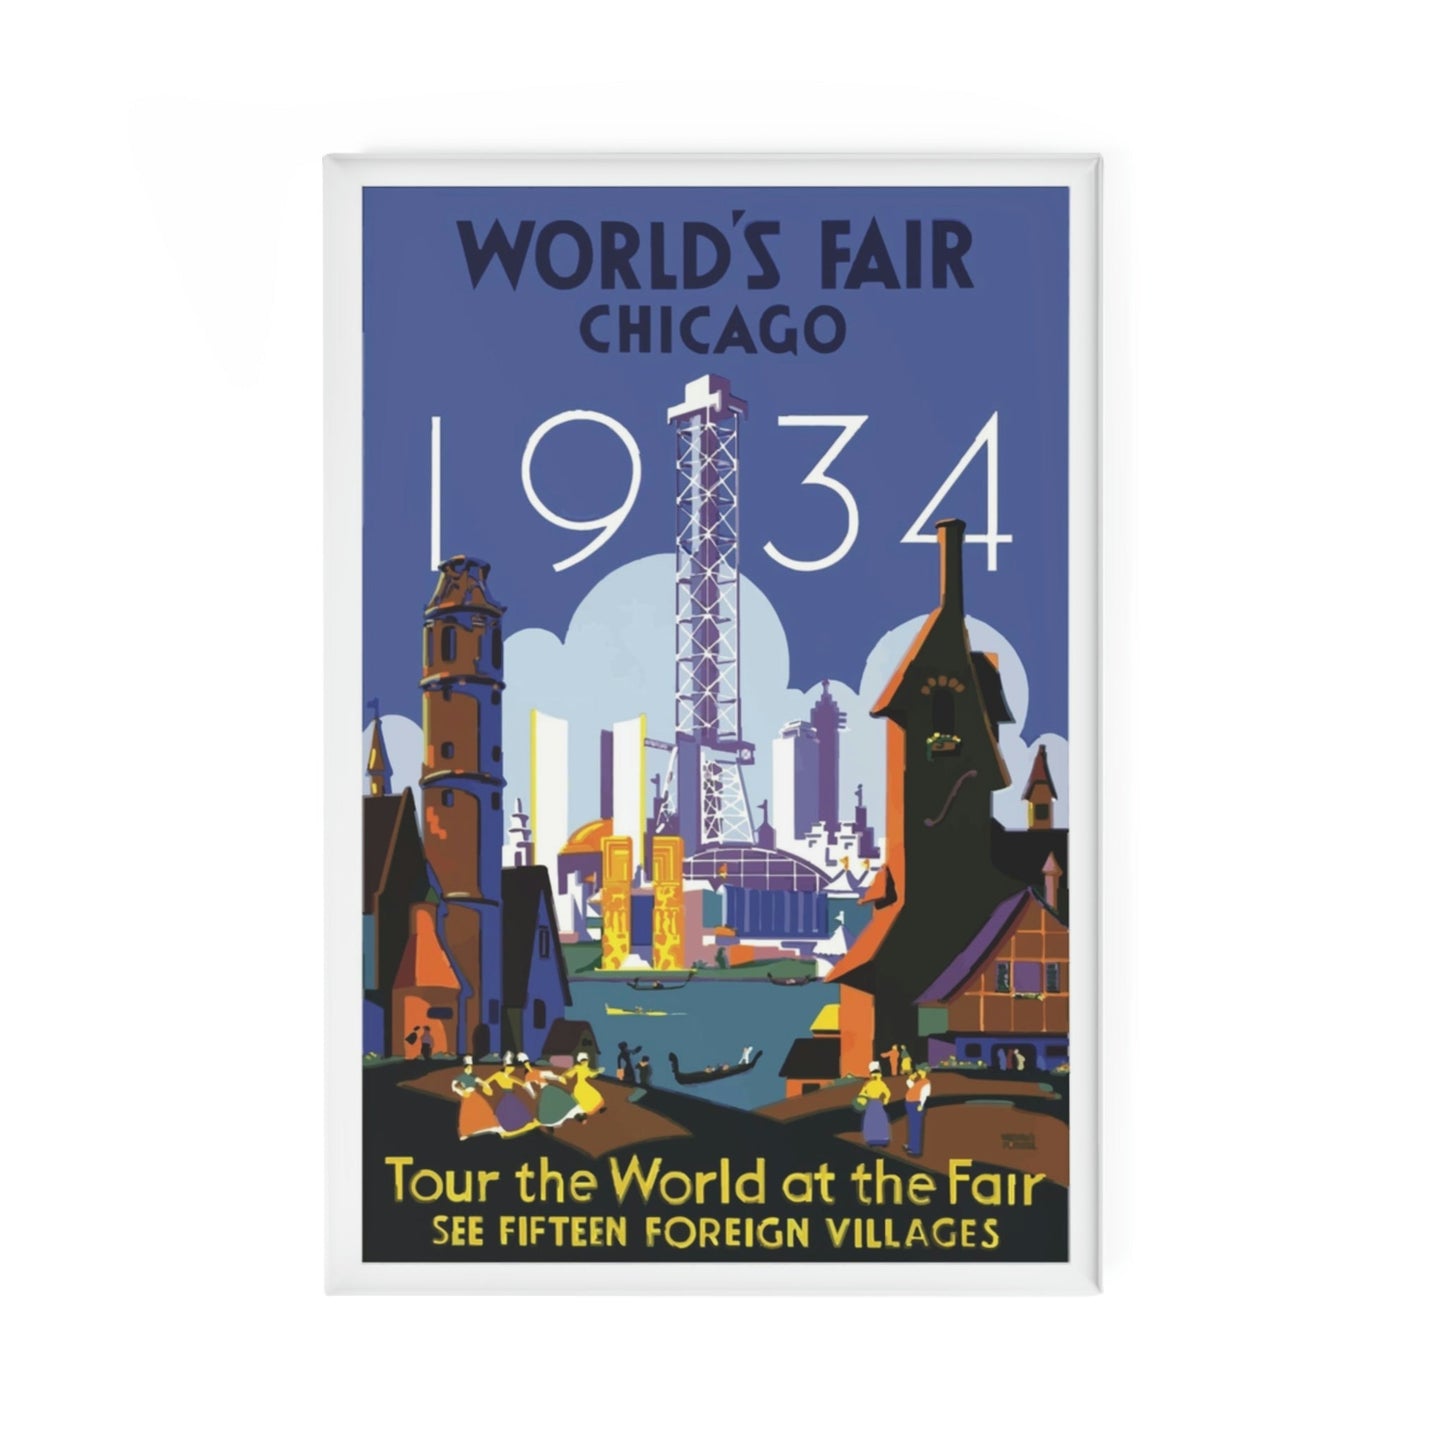 Chicago World's Fair 1934 Magnet